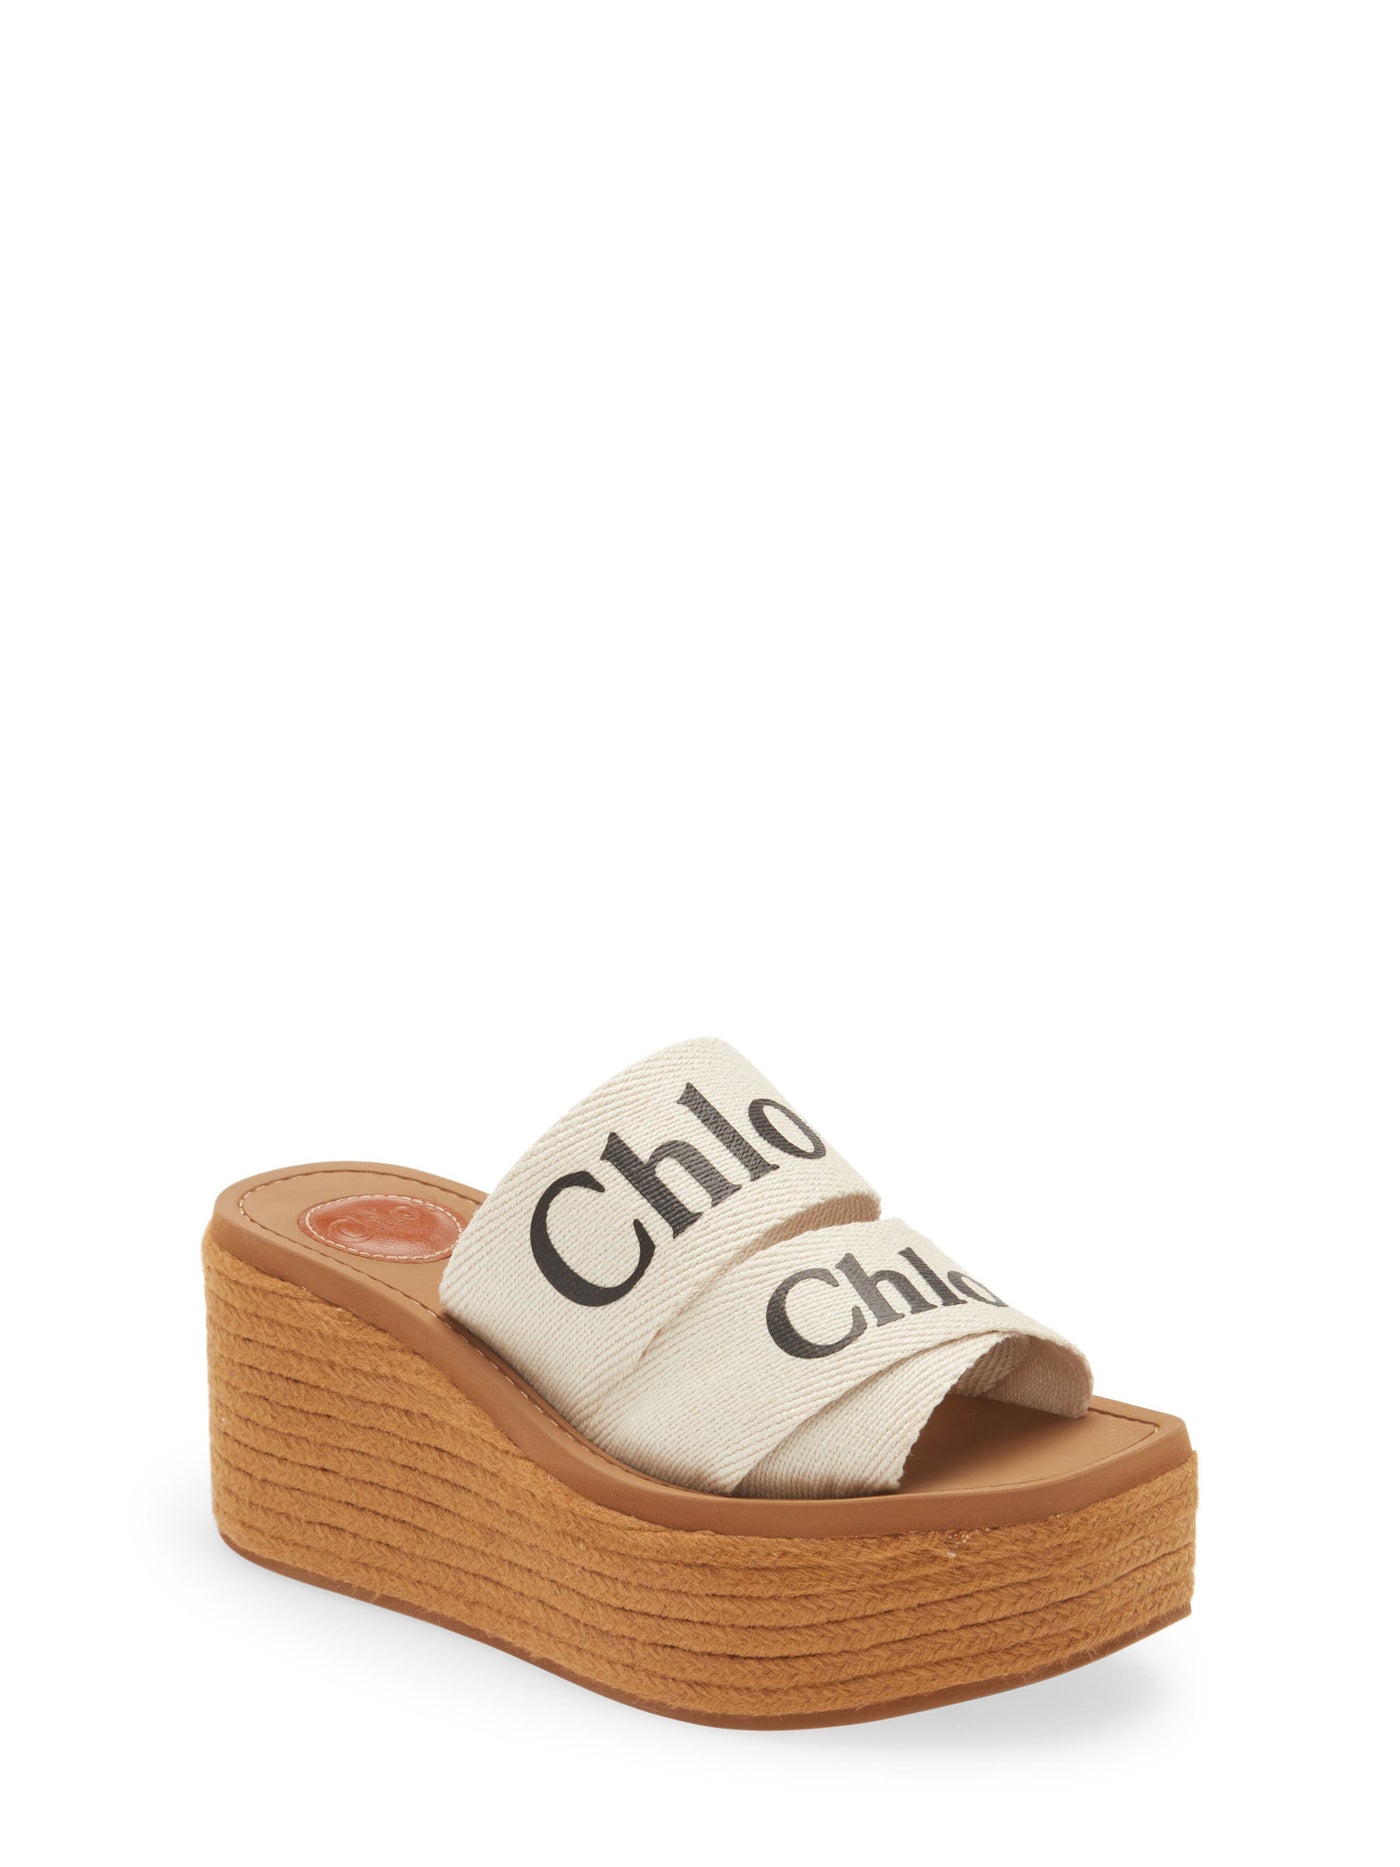 CHLOE Womens Beige Logo 2" Platform Crisscross Straps Woven Woody Open Toe Wedge Slip On Espadrille Shoes 39